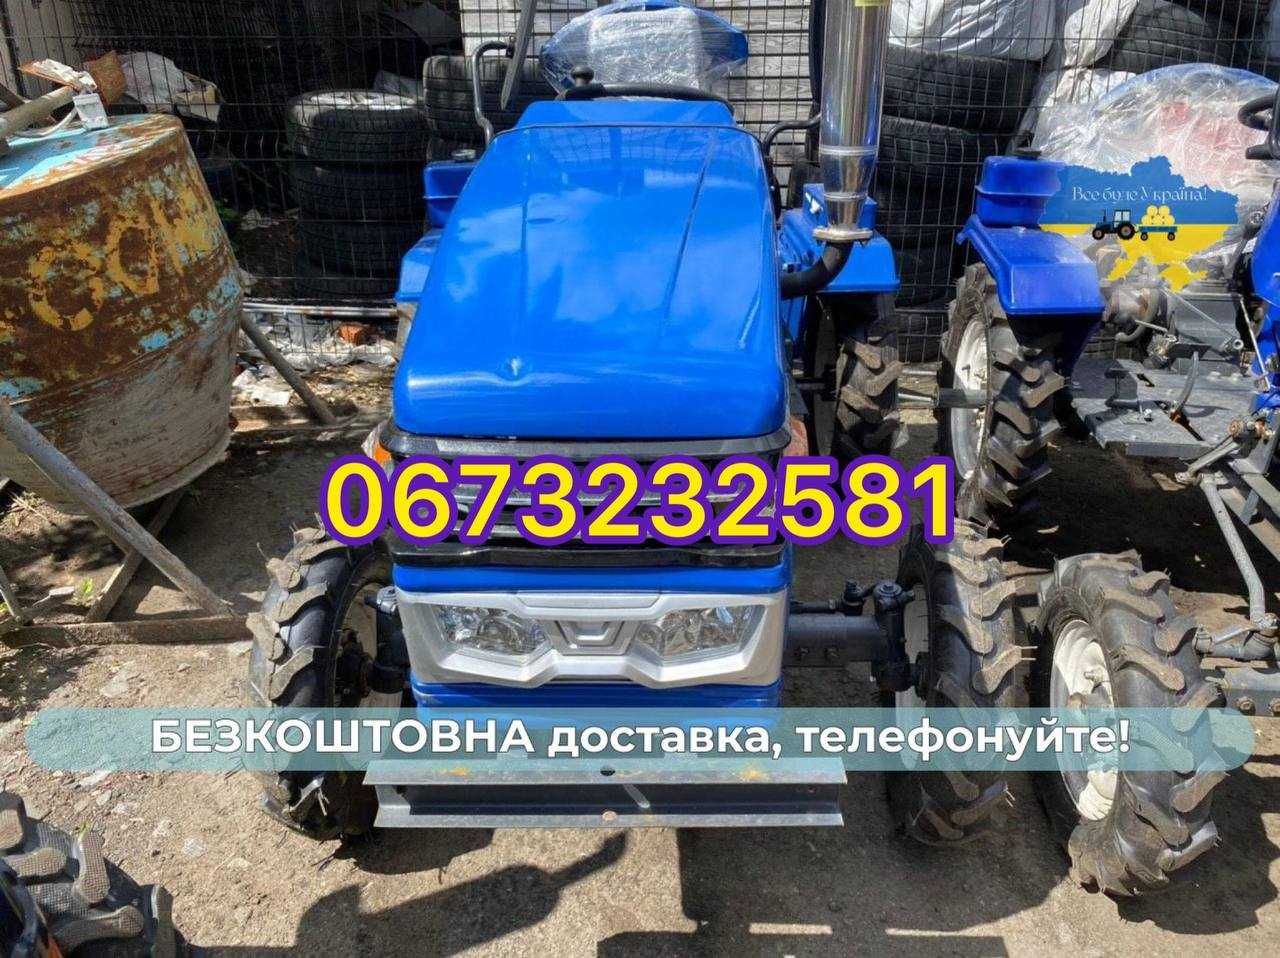 Трактор БУЛАТ Т-25 PRO 24л.с. БЕСПЛАТНО доставка, ЗИП +Масла Кредит